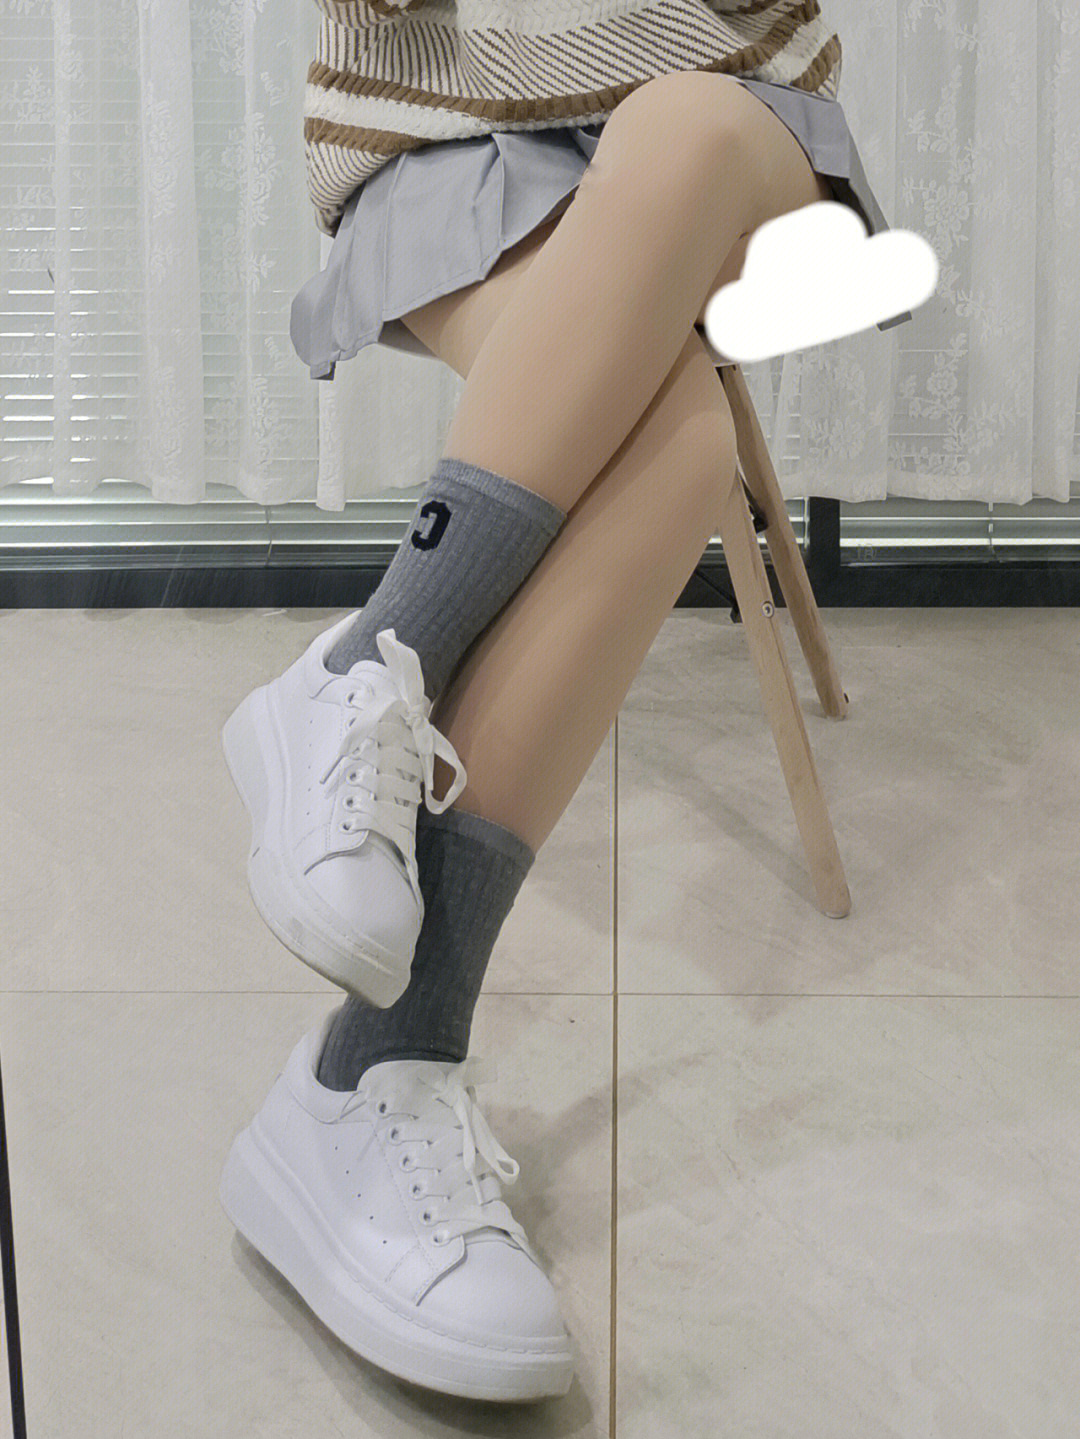 北京姑娘冬天光大腿图片